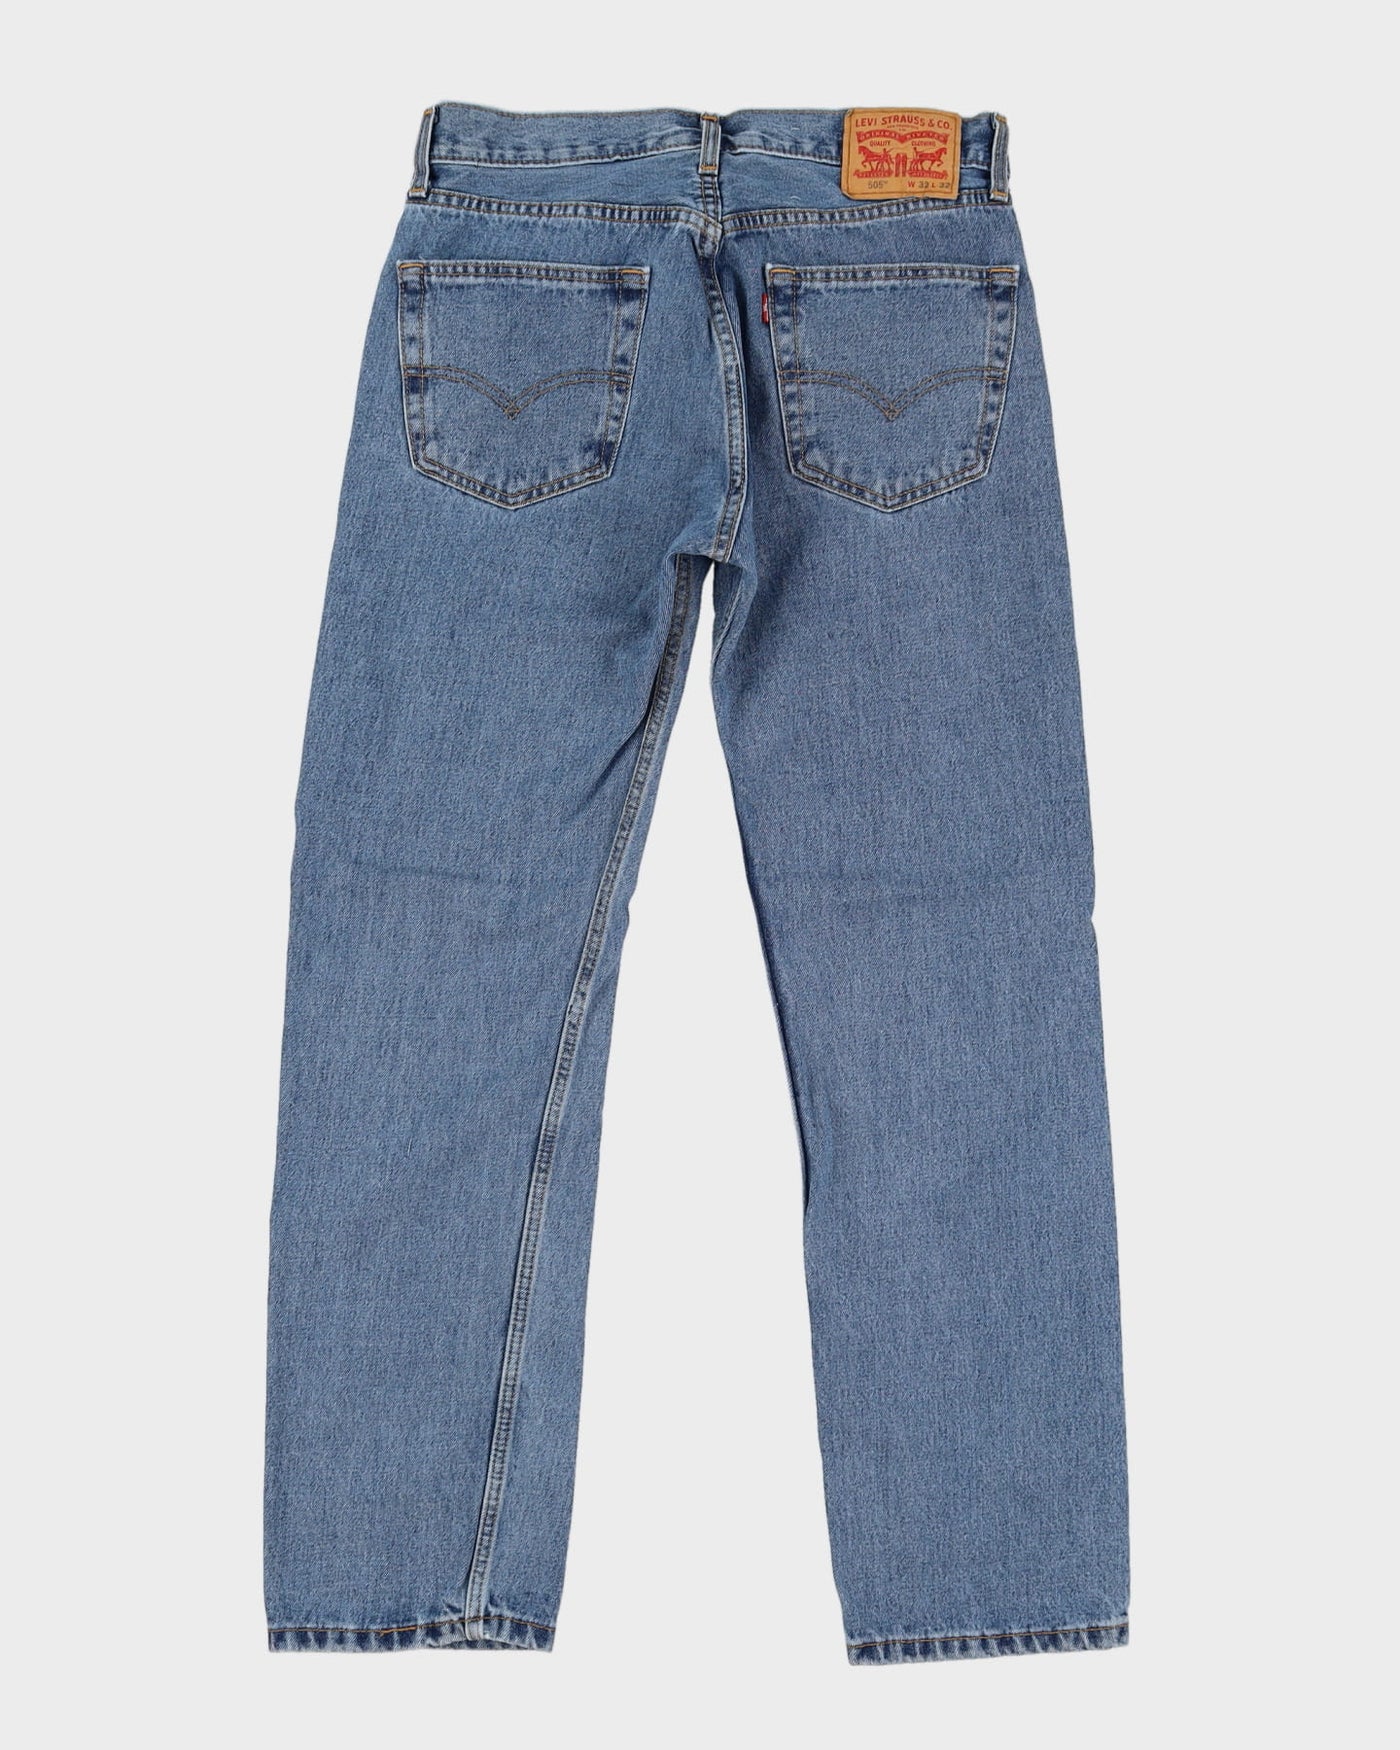 Levi's 505 Blue Jeans - W32 L31